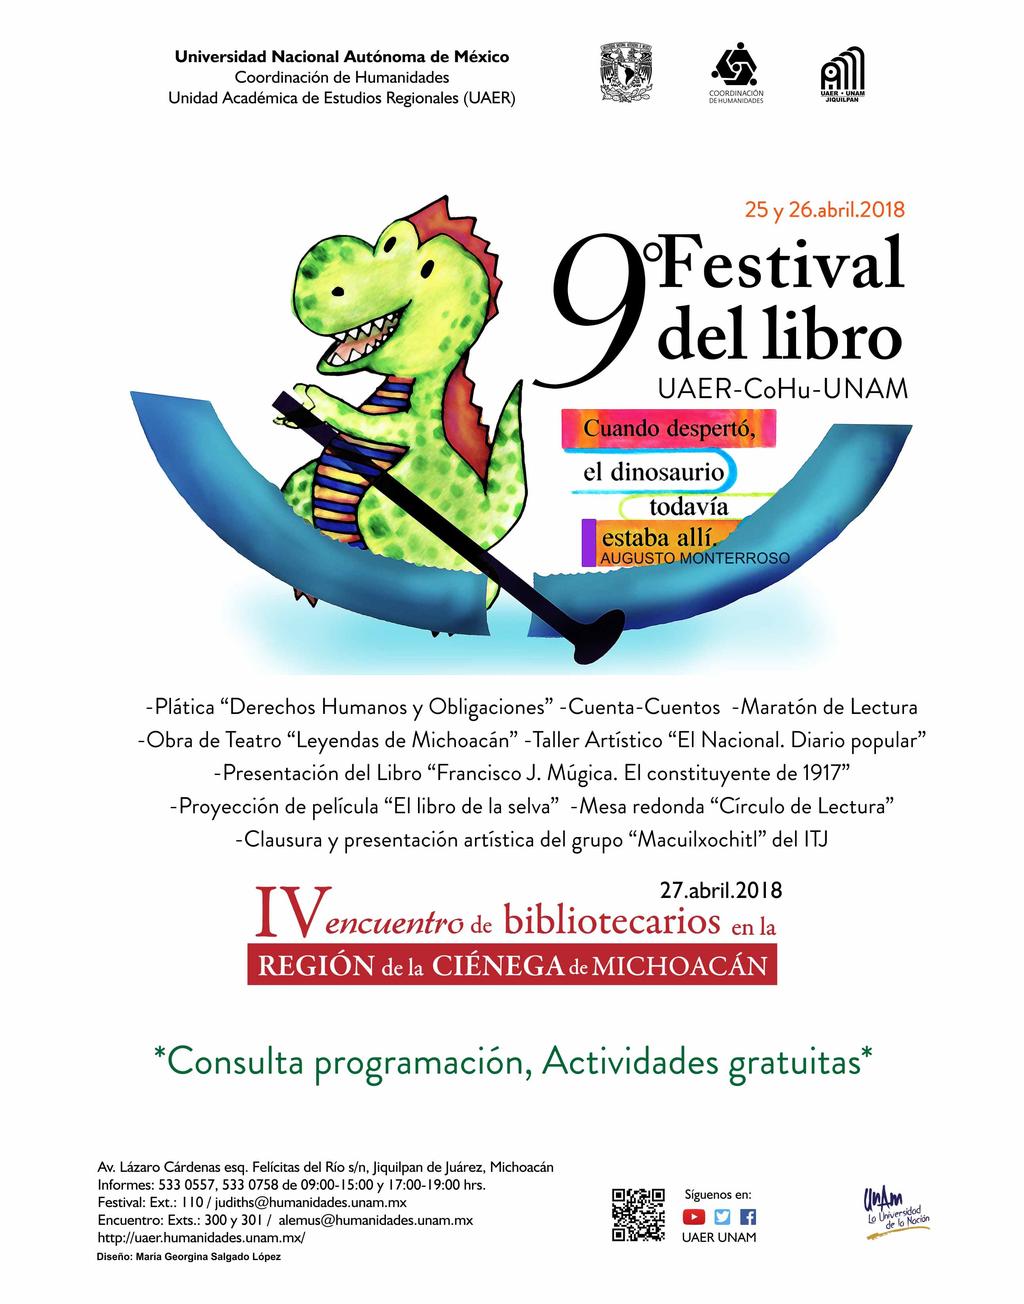 UNIVERSIDAD NACIONAL AUTÓNOMA DE MÉXICO invitan al 9 FESTIVAL DEL LIBRO UAER-COHU-UNAM Cuenta cuentos, presentación de libro, conferencias, taller, obra de teatro, maratón de lectura, etc.